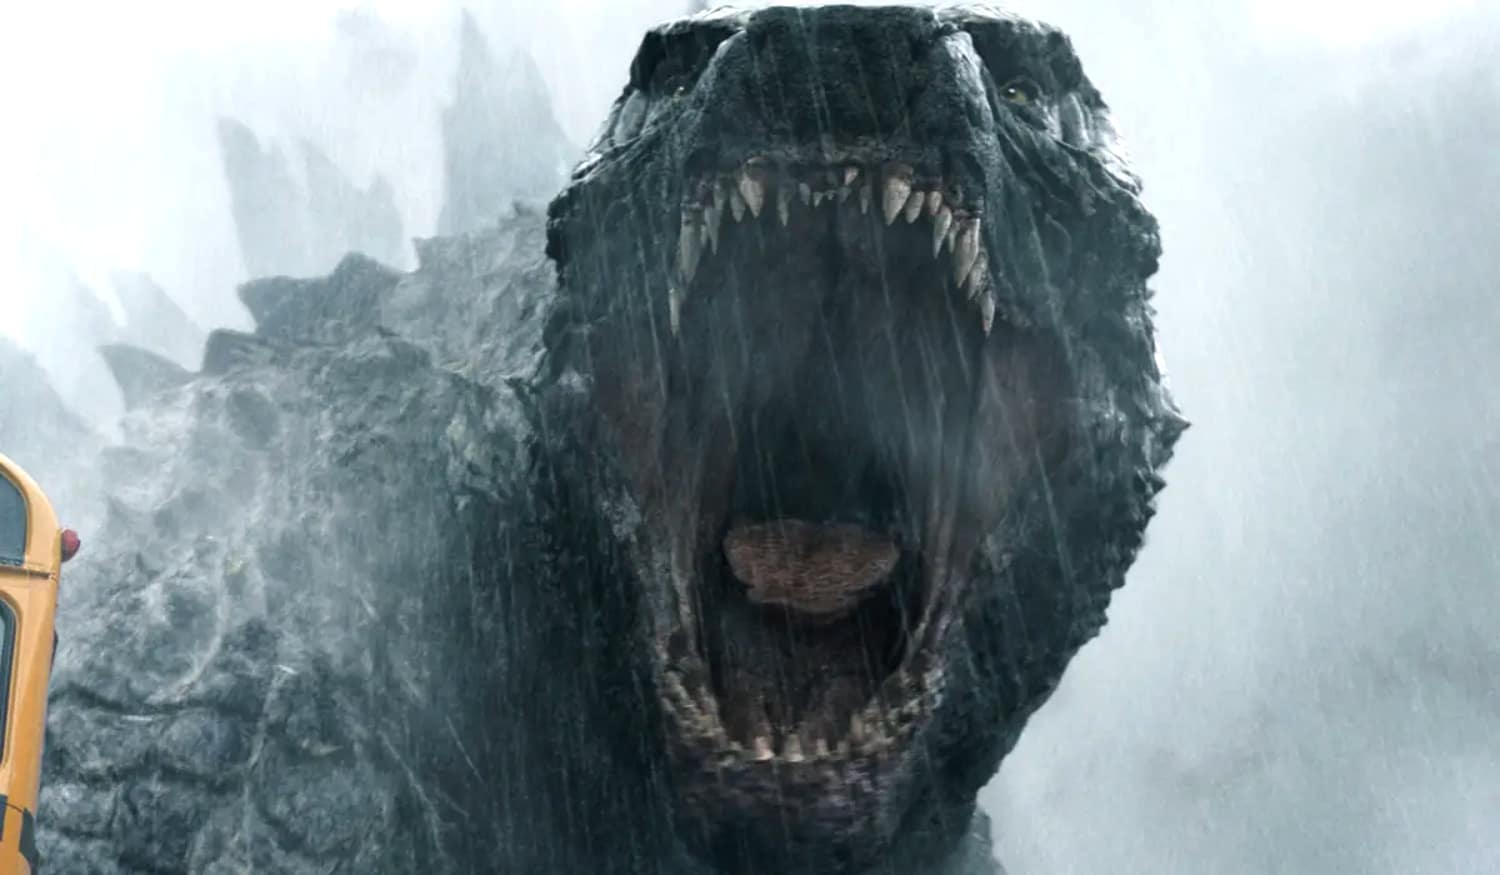 Trailer for Apple TV+'s Godzilla Live-Action Series 'Monarch: Legacy of Monsters' starring Anna Sawai : ハリウッド版「ゴジラ」が実写の配信シリーズになった Apple TV+ の最新作「モナーク : レガシー・オブ・モンスターズ」が初公開の予告編と新しい写真を披露して、リリース日を発表 ! !